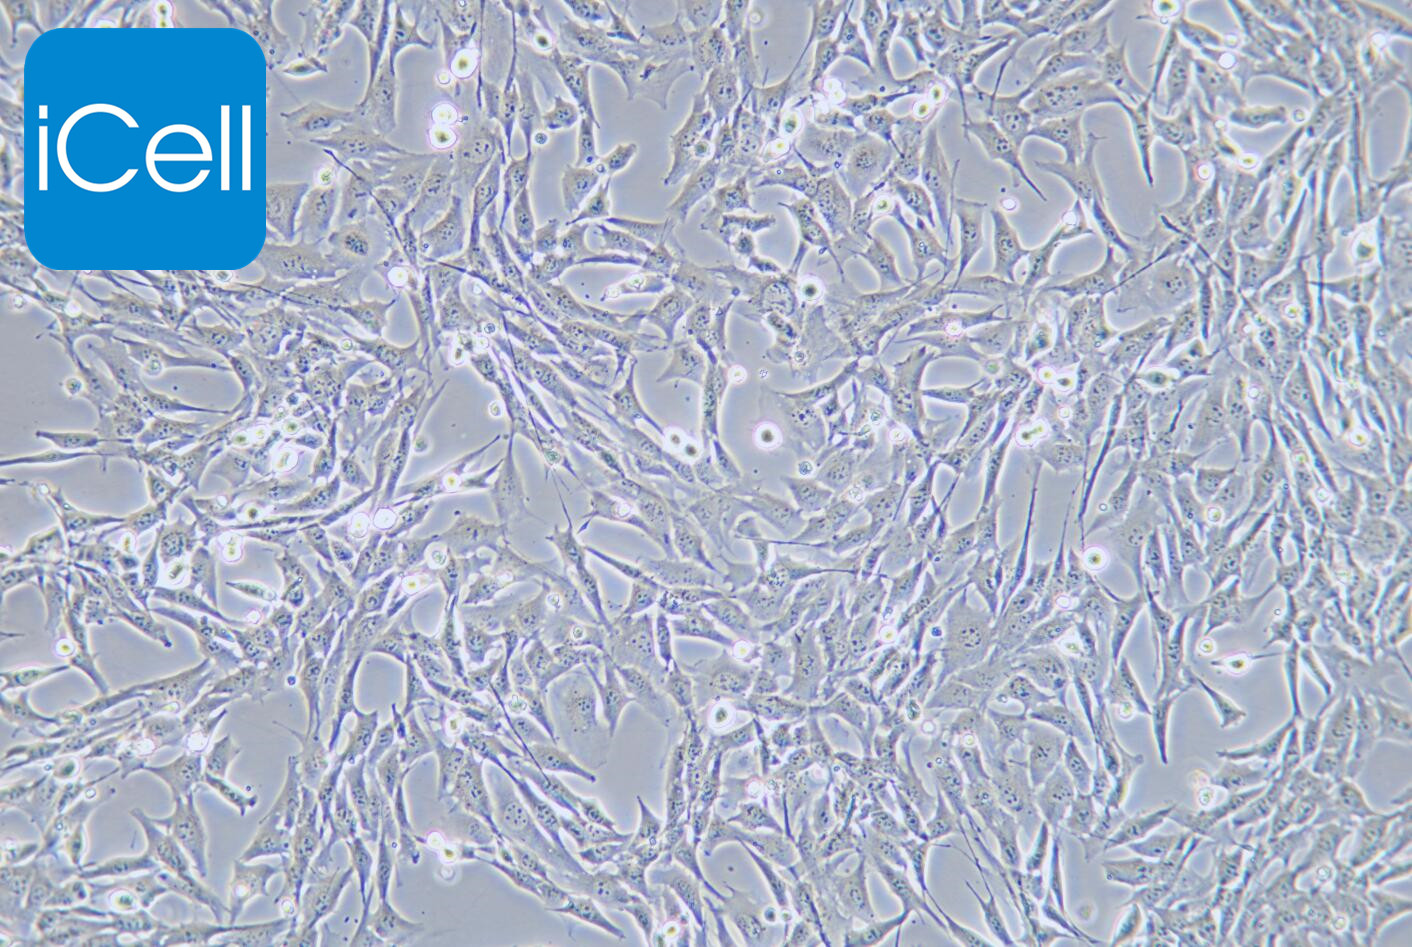 HL-1 小鼠心肌细胞/种属鉴定